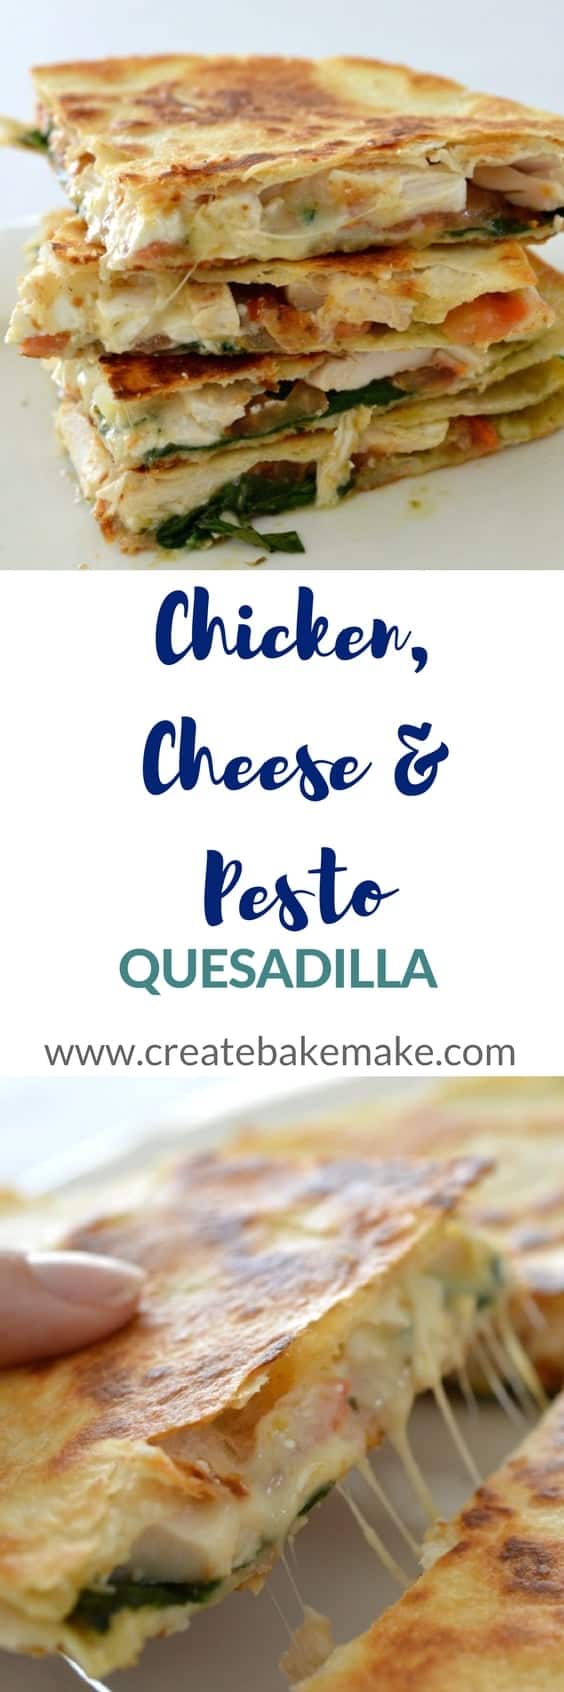 Chicken Cheese and Pesto Quesadilla